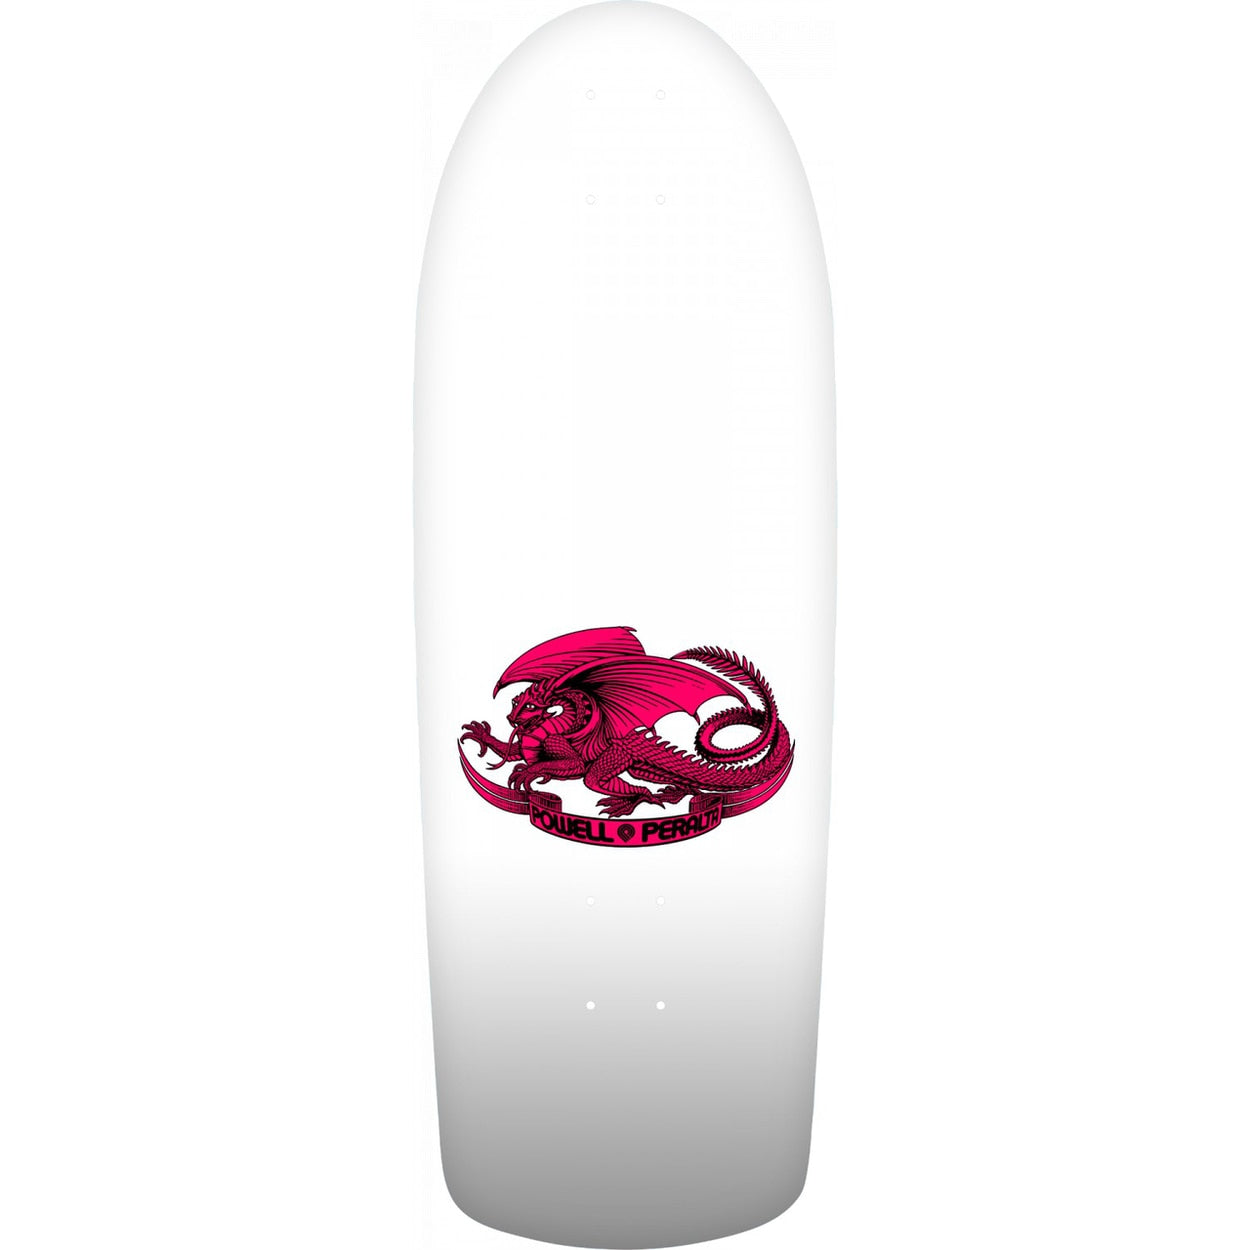 Powell Peralta OG Ripper Skateboard Deck - White/Turquoise